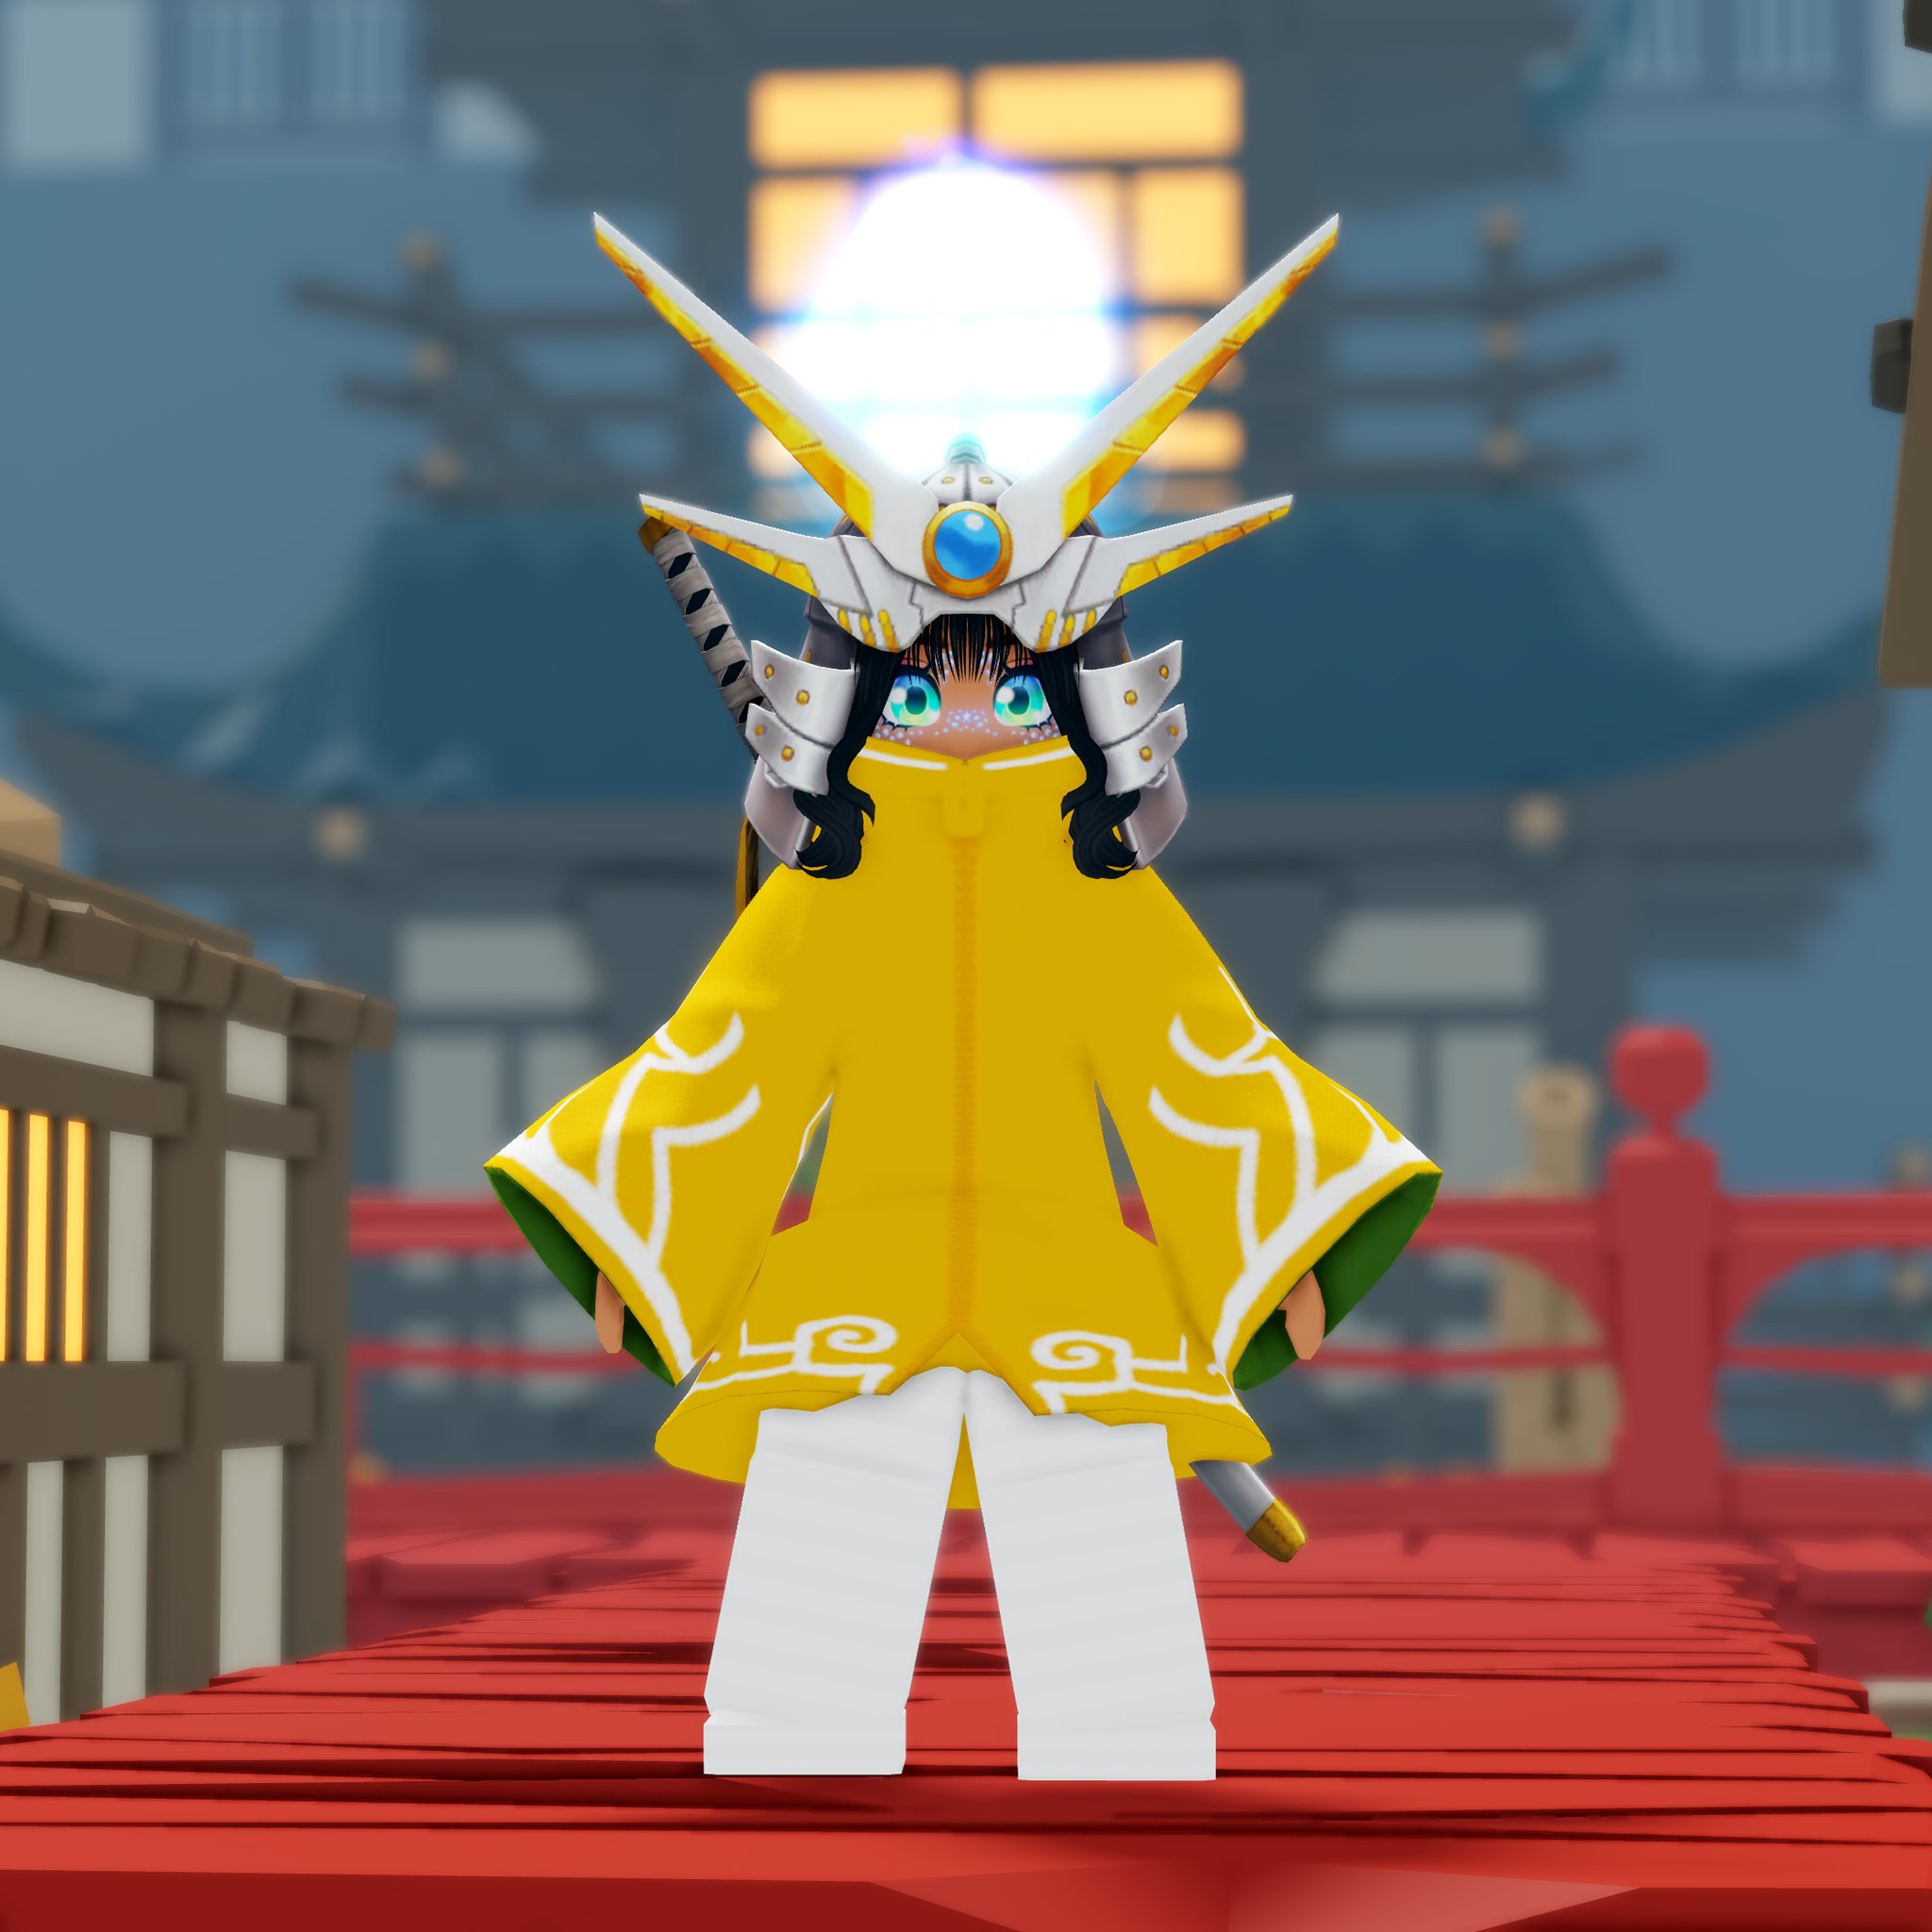 Hãy khám phá thế giới giả lập đầy màu sắc của Roblox Avatar Envy. Cùng trang bị cho nhân vật của bạn những trang phục và phụ kiện độc đáo để trở thành người chơi có phong cách riêng biệt trên Roblox.